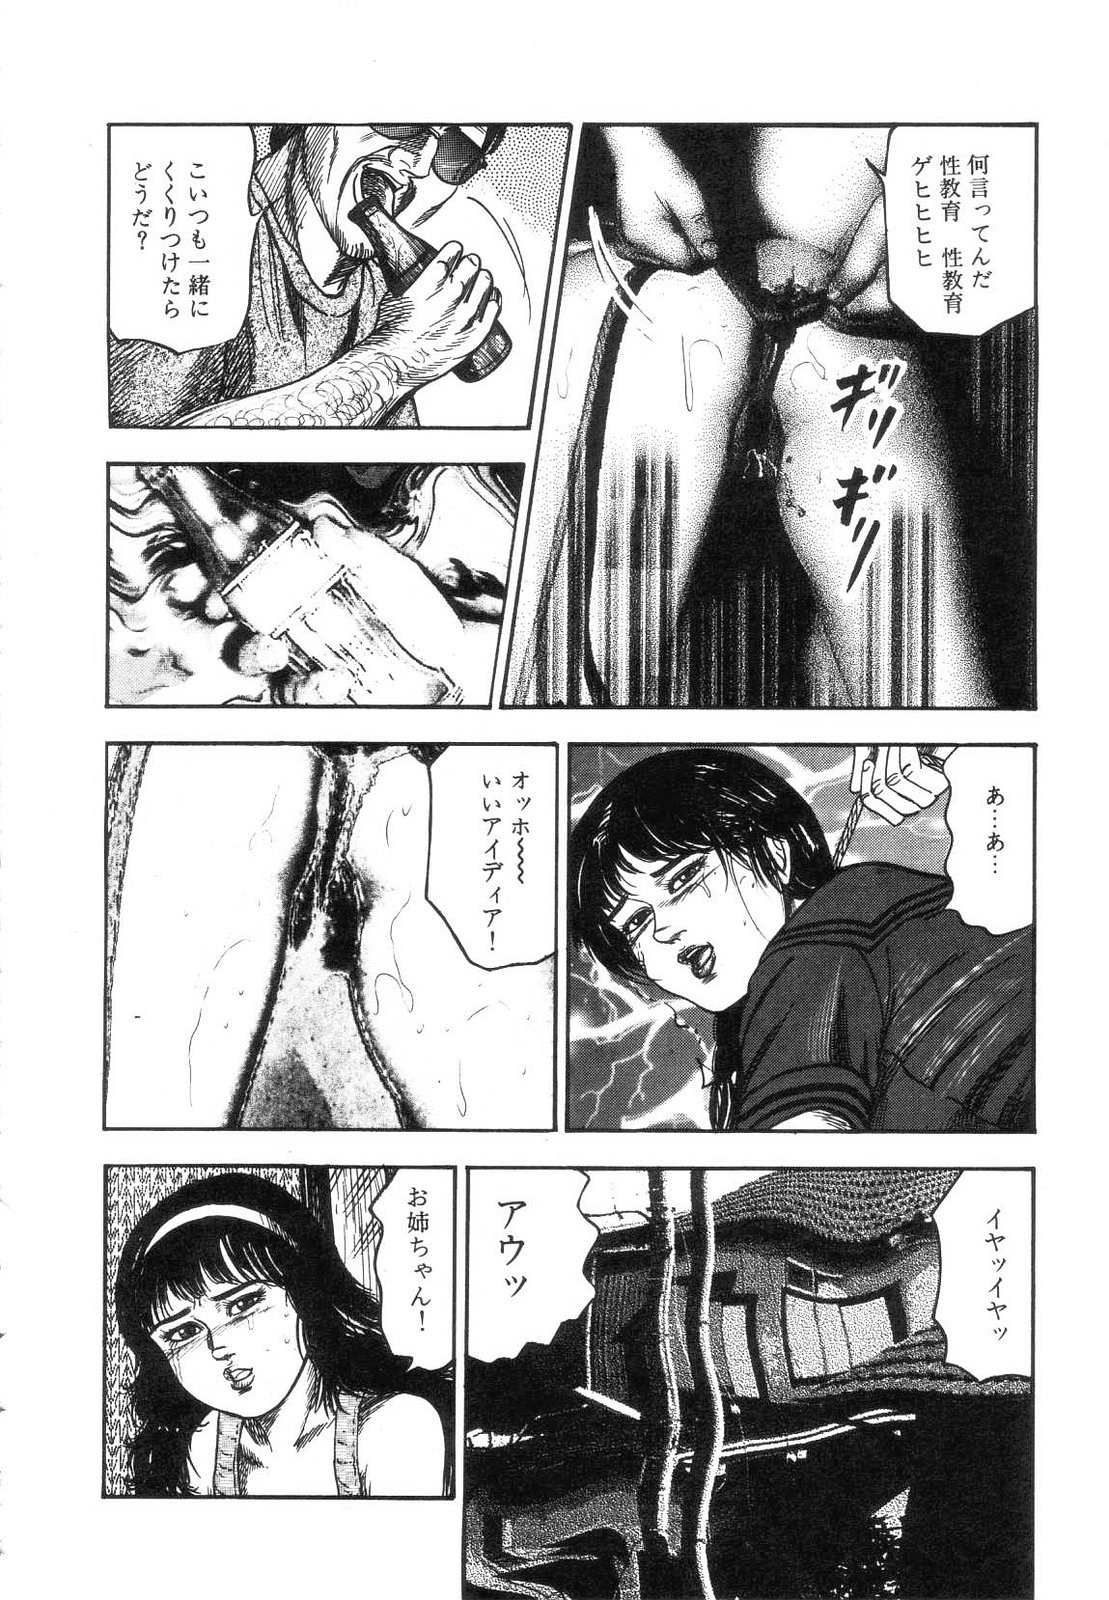 [Sanjou Tomomi] Shiro no Mokushiroku Vol. 7 - Shiiku Ningyou Erika no Shou 189